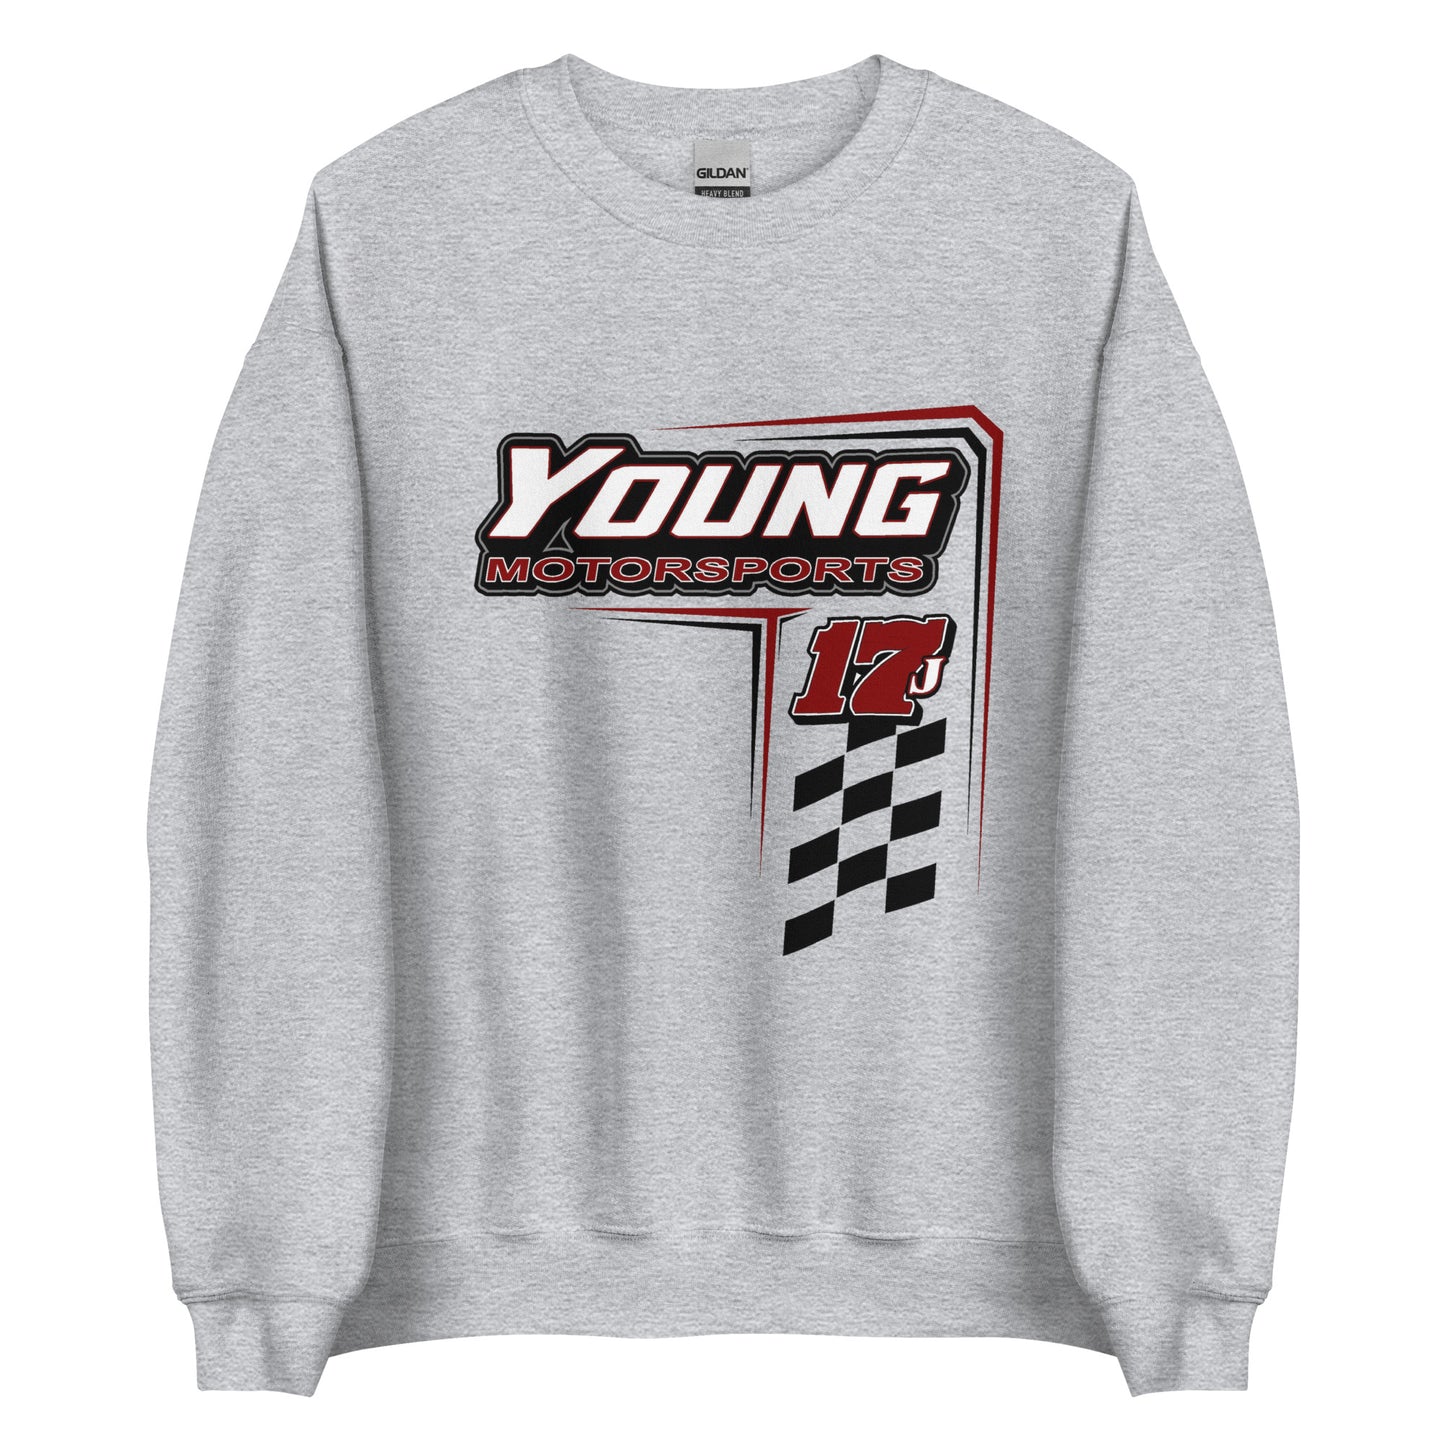 Young Motorsports Adult Crew Sweatshirt